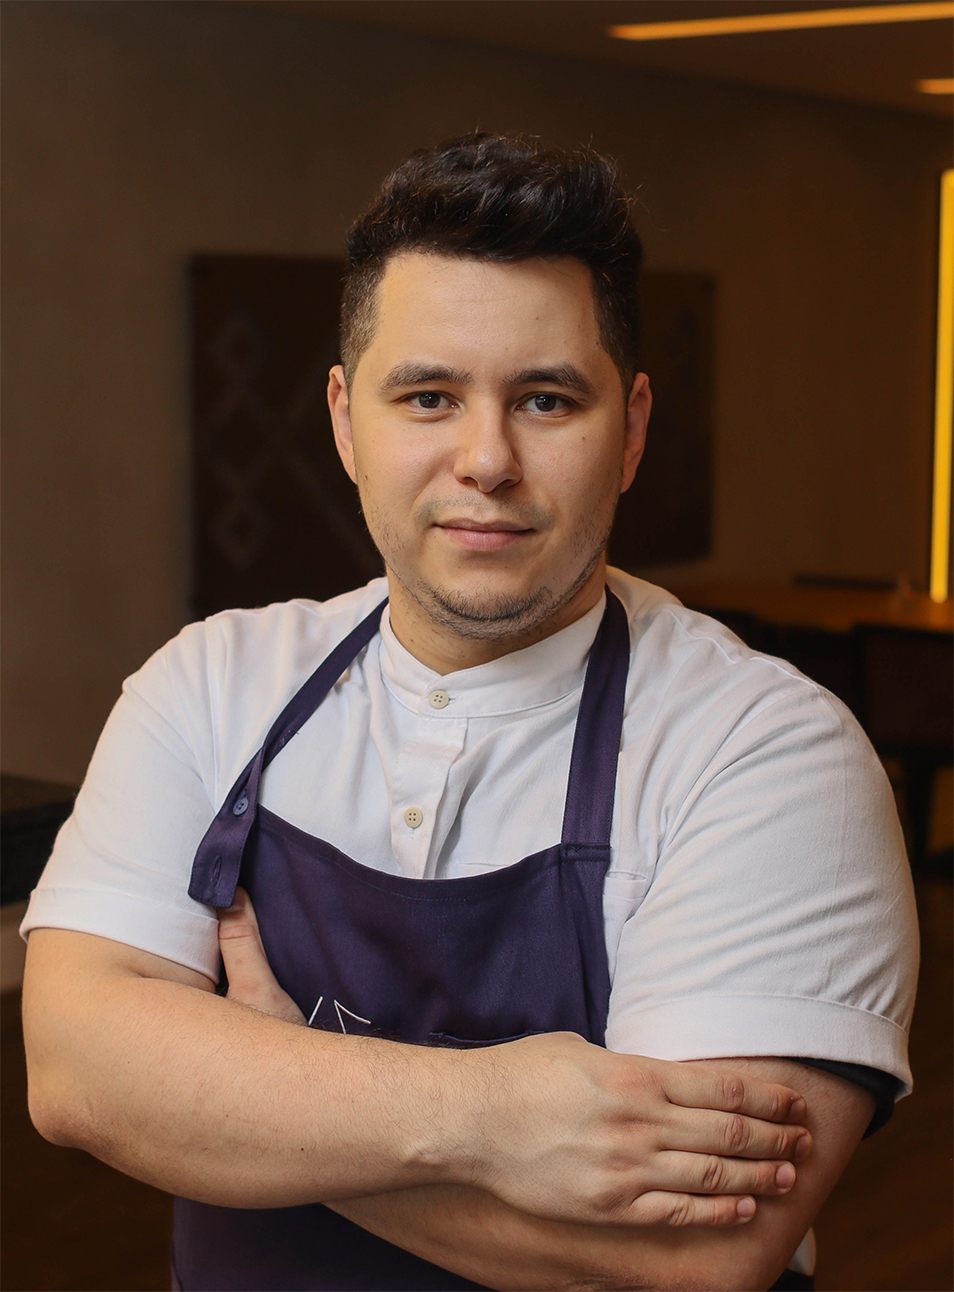 Chef Zk Perez